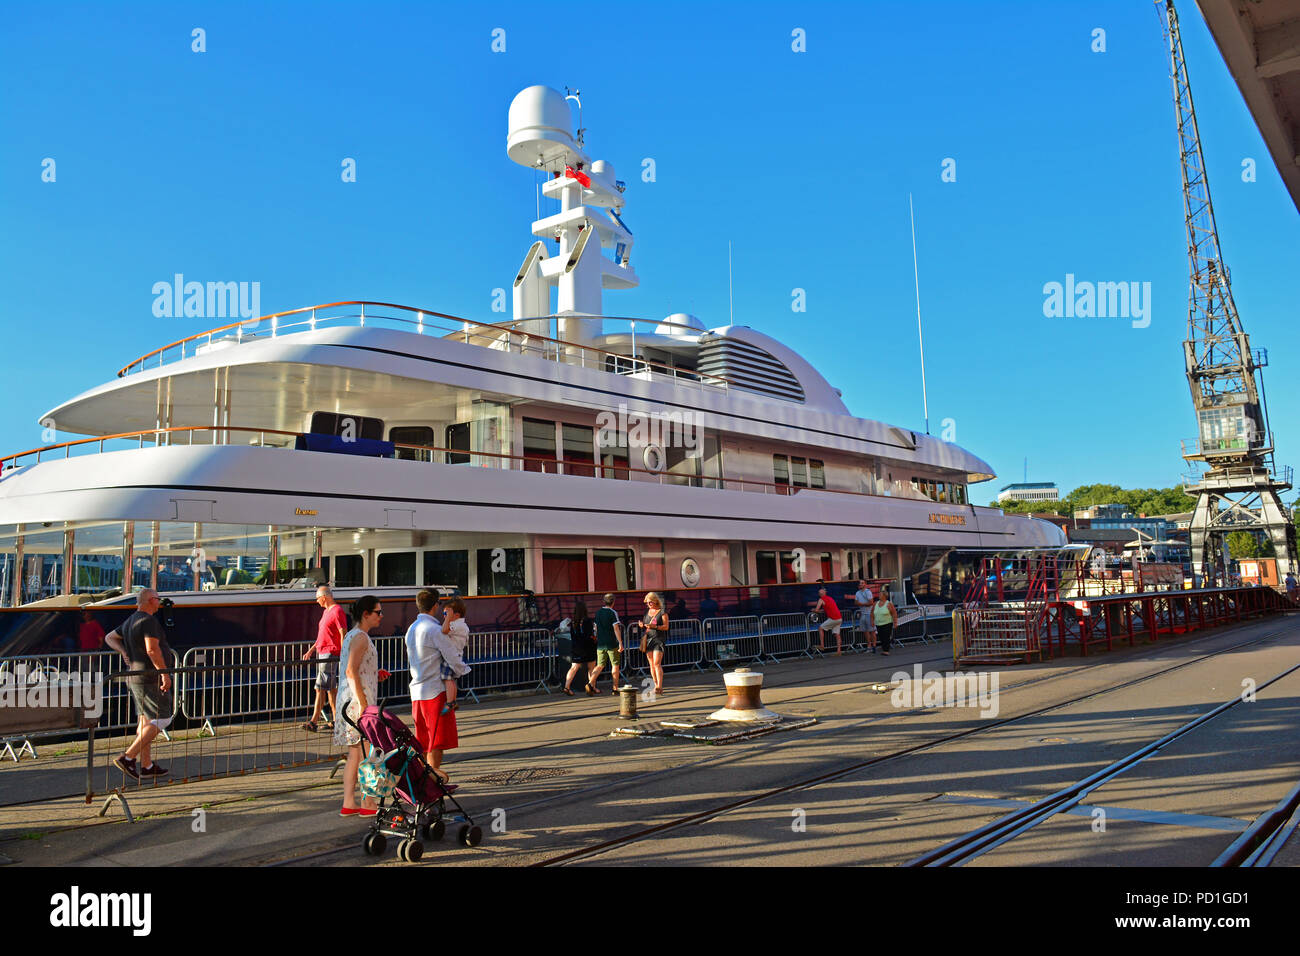 Bristol, Regno Unito. Il 5 agosto 2018. In un pomeriggio caldo passerby in Bristol City Docks furono sorpresi quando Archimede un super yacht ormeggiati lungo il lato della M-Shed direttamente di fronte la LLoyds anfiteatro nel pomeriggio di domenica 5 agosto. I super yacht è pensato per essere di proprietà di un miliardario statunitense James Jim Simons. L'Archimede è pensato per essere un valore di circa £ 75 milioni. Battenti bandiera delle Bermuda e i suoi 68 metri di lunghezza e trasporta un equipaggio di 18 facendo ricerca scientifica. Robert Timoney/Alamy/Live/News Foto Stock